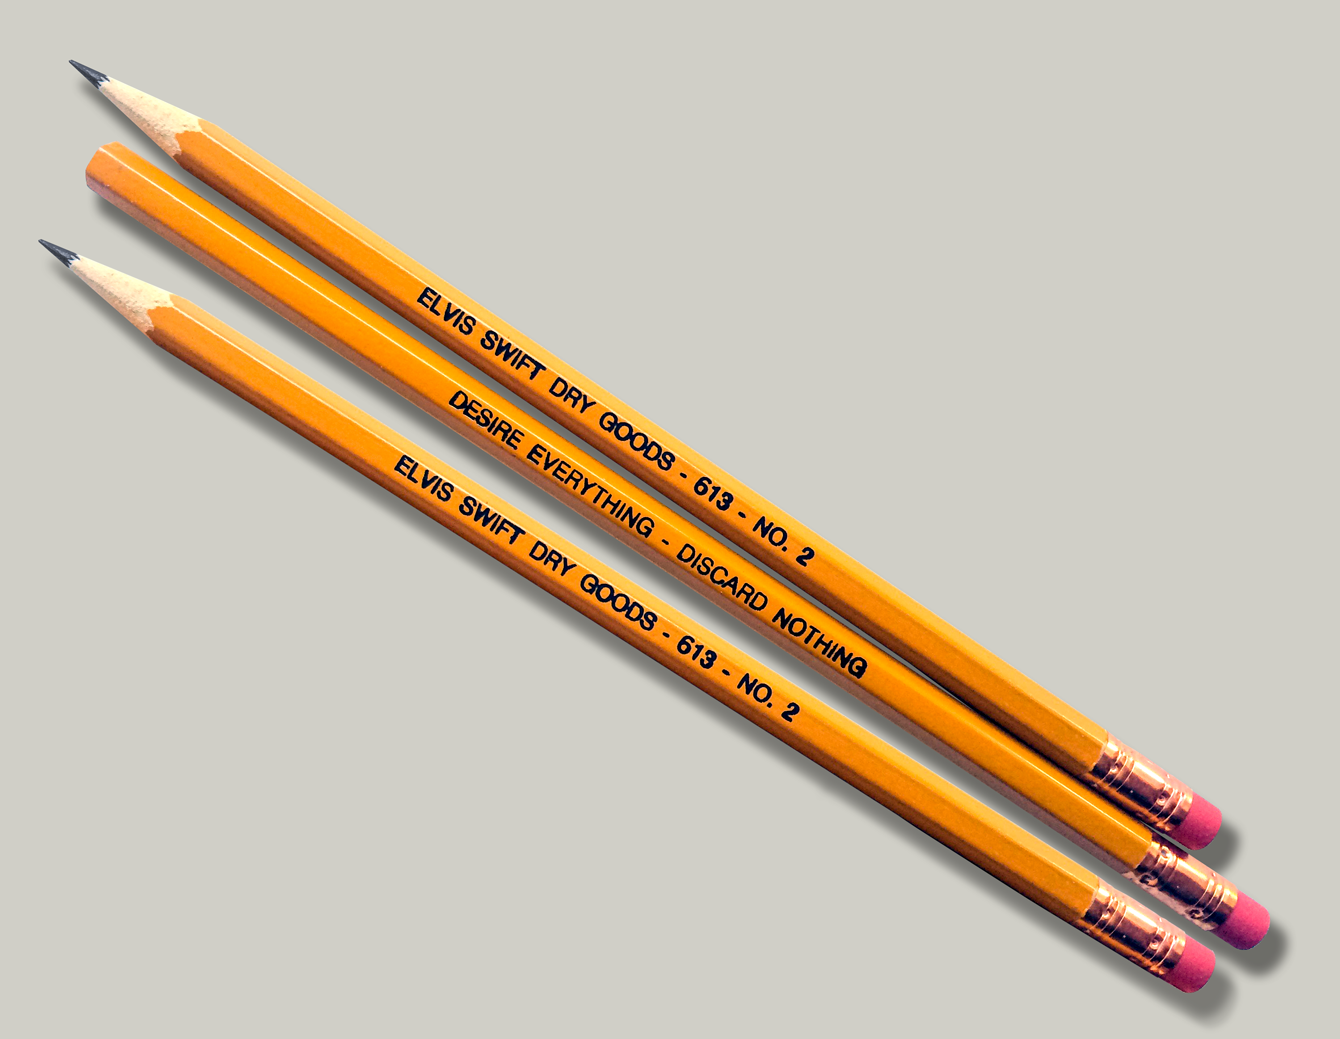 pencil pencil